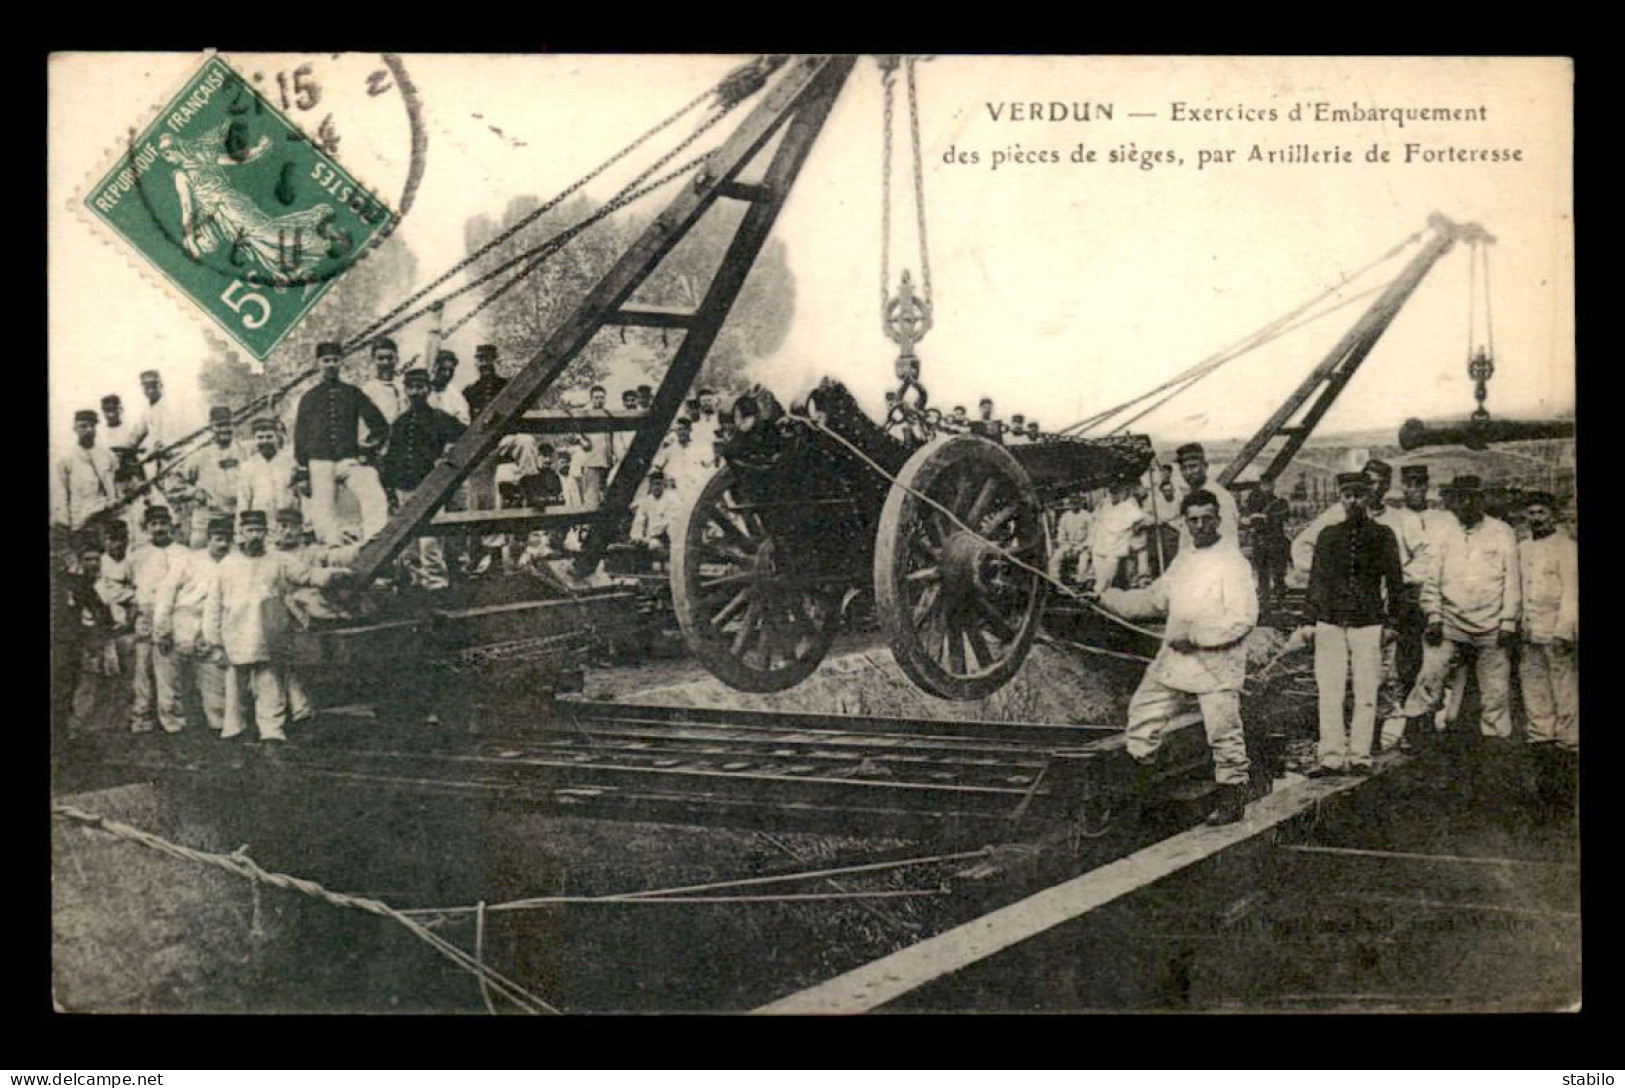 55 - VERDUN - EXERCICES D'EMBARQUEMENT DES PIECES DE SIEGES PAR ARTILLERIE DE FORTERESSE  - Verdun